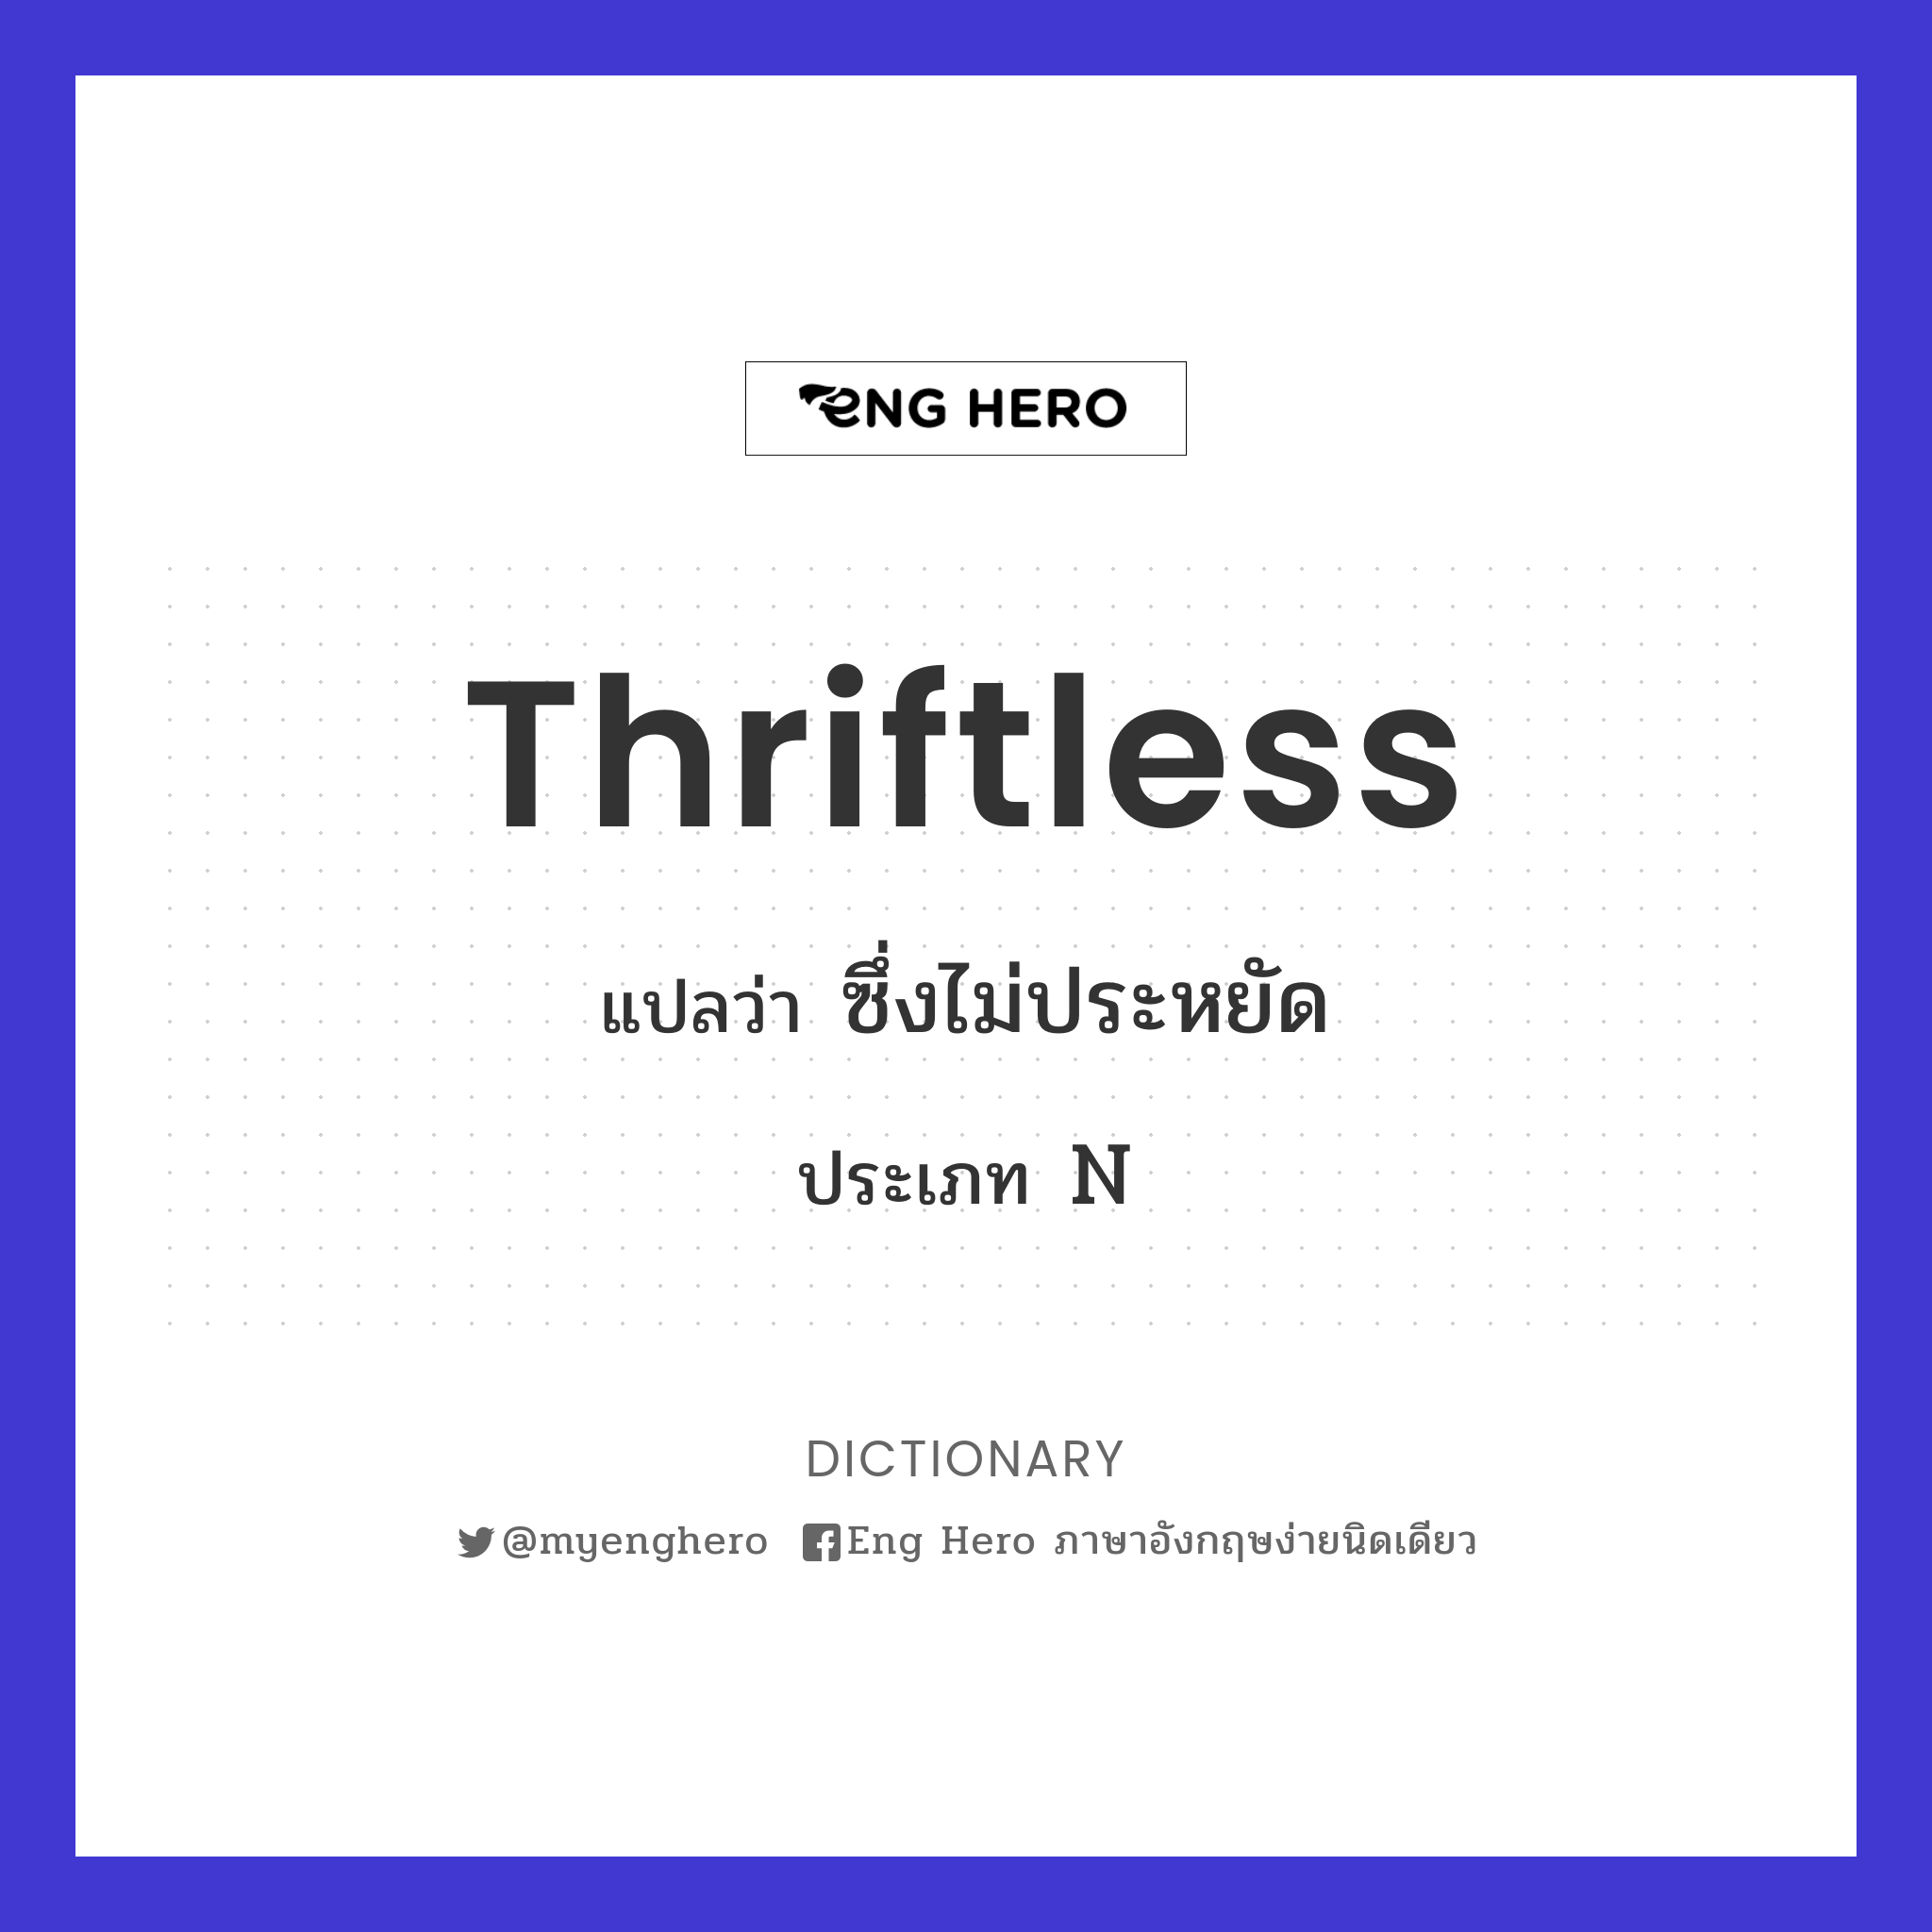 thriftless